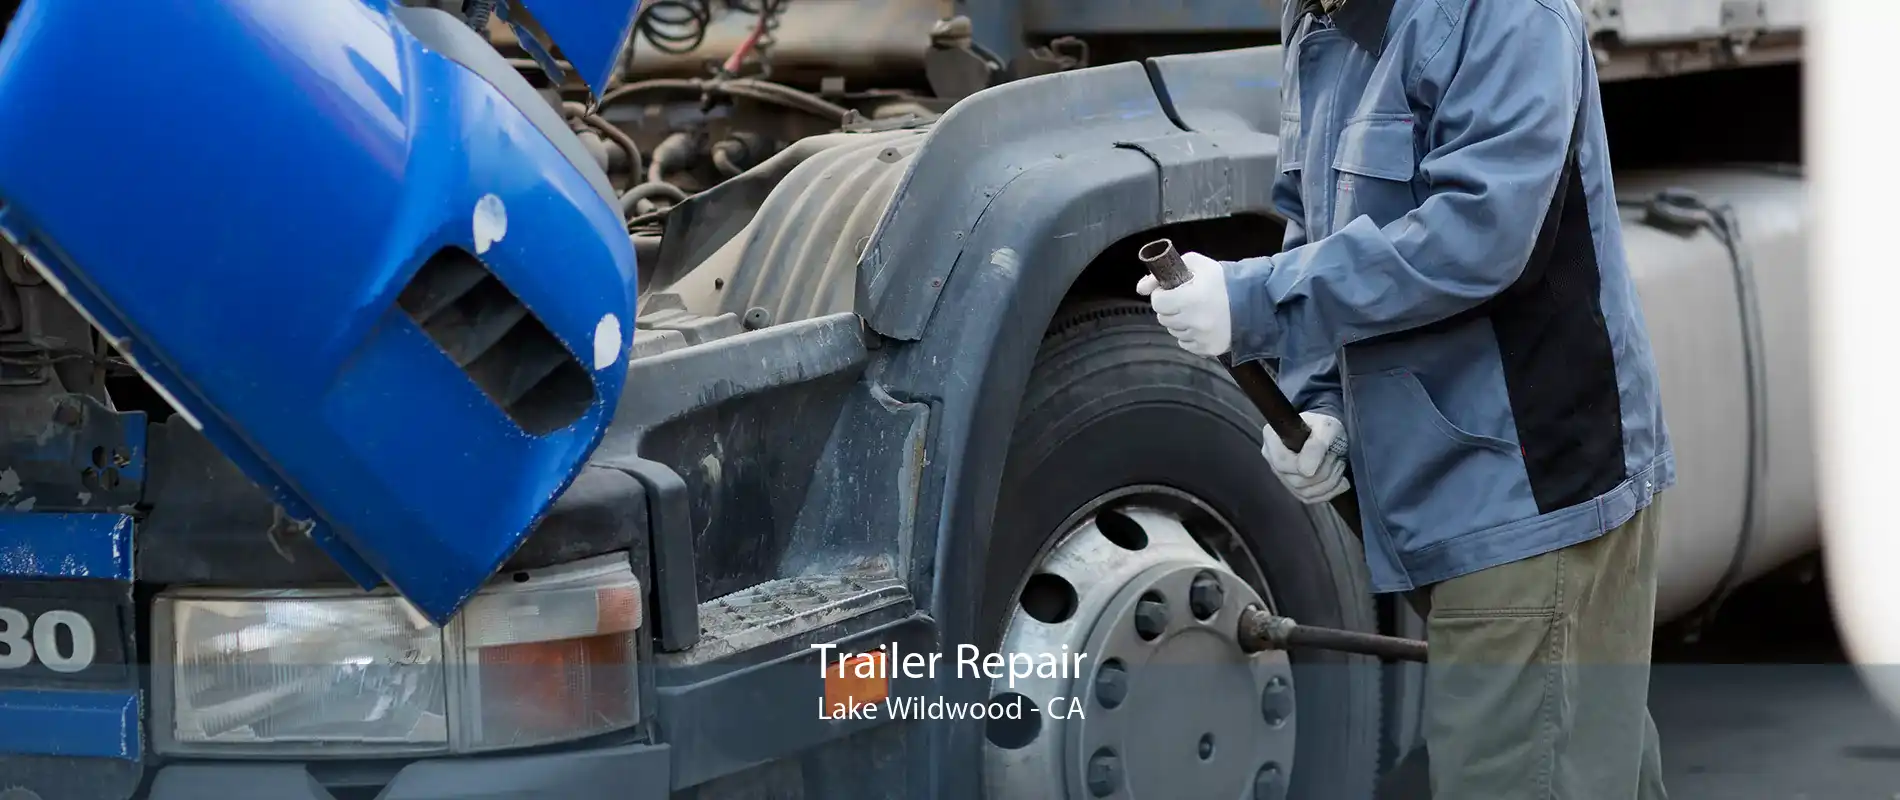 Trailer Repair Lake Wildwood - CA